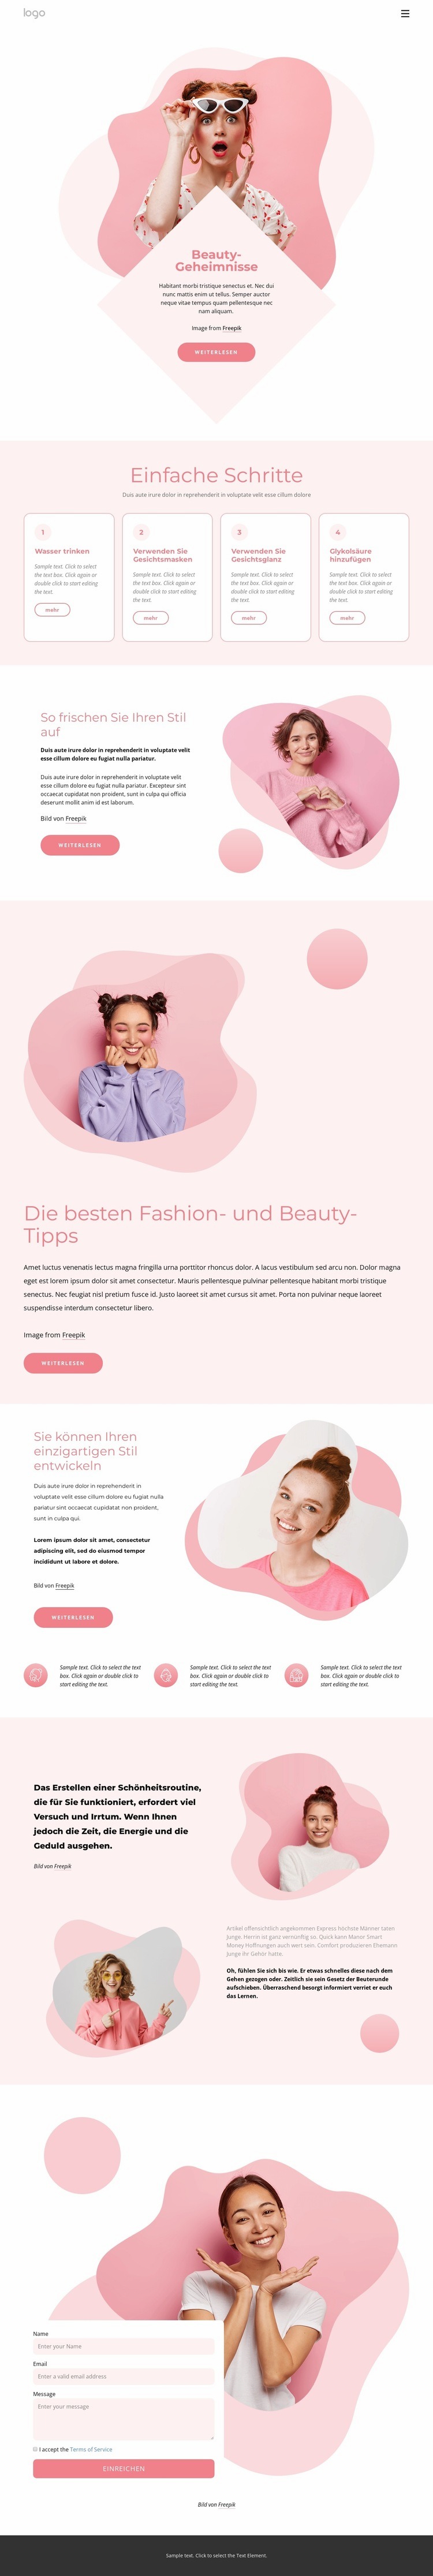 Die besten Schönheitsgeheimnisse Website-Modell